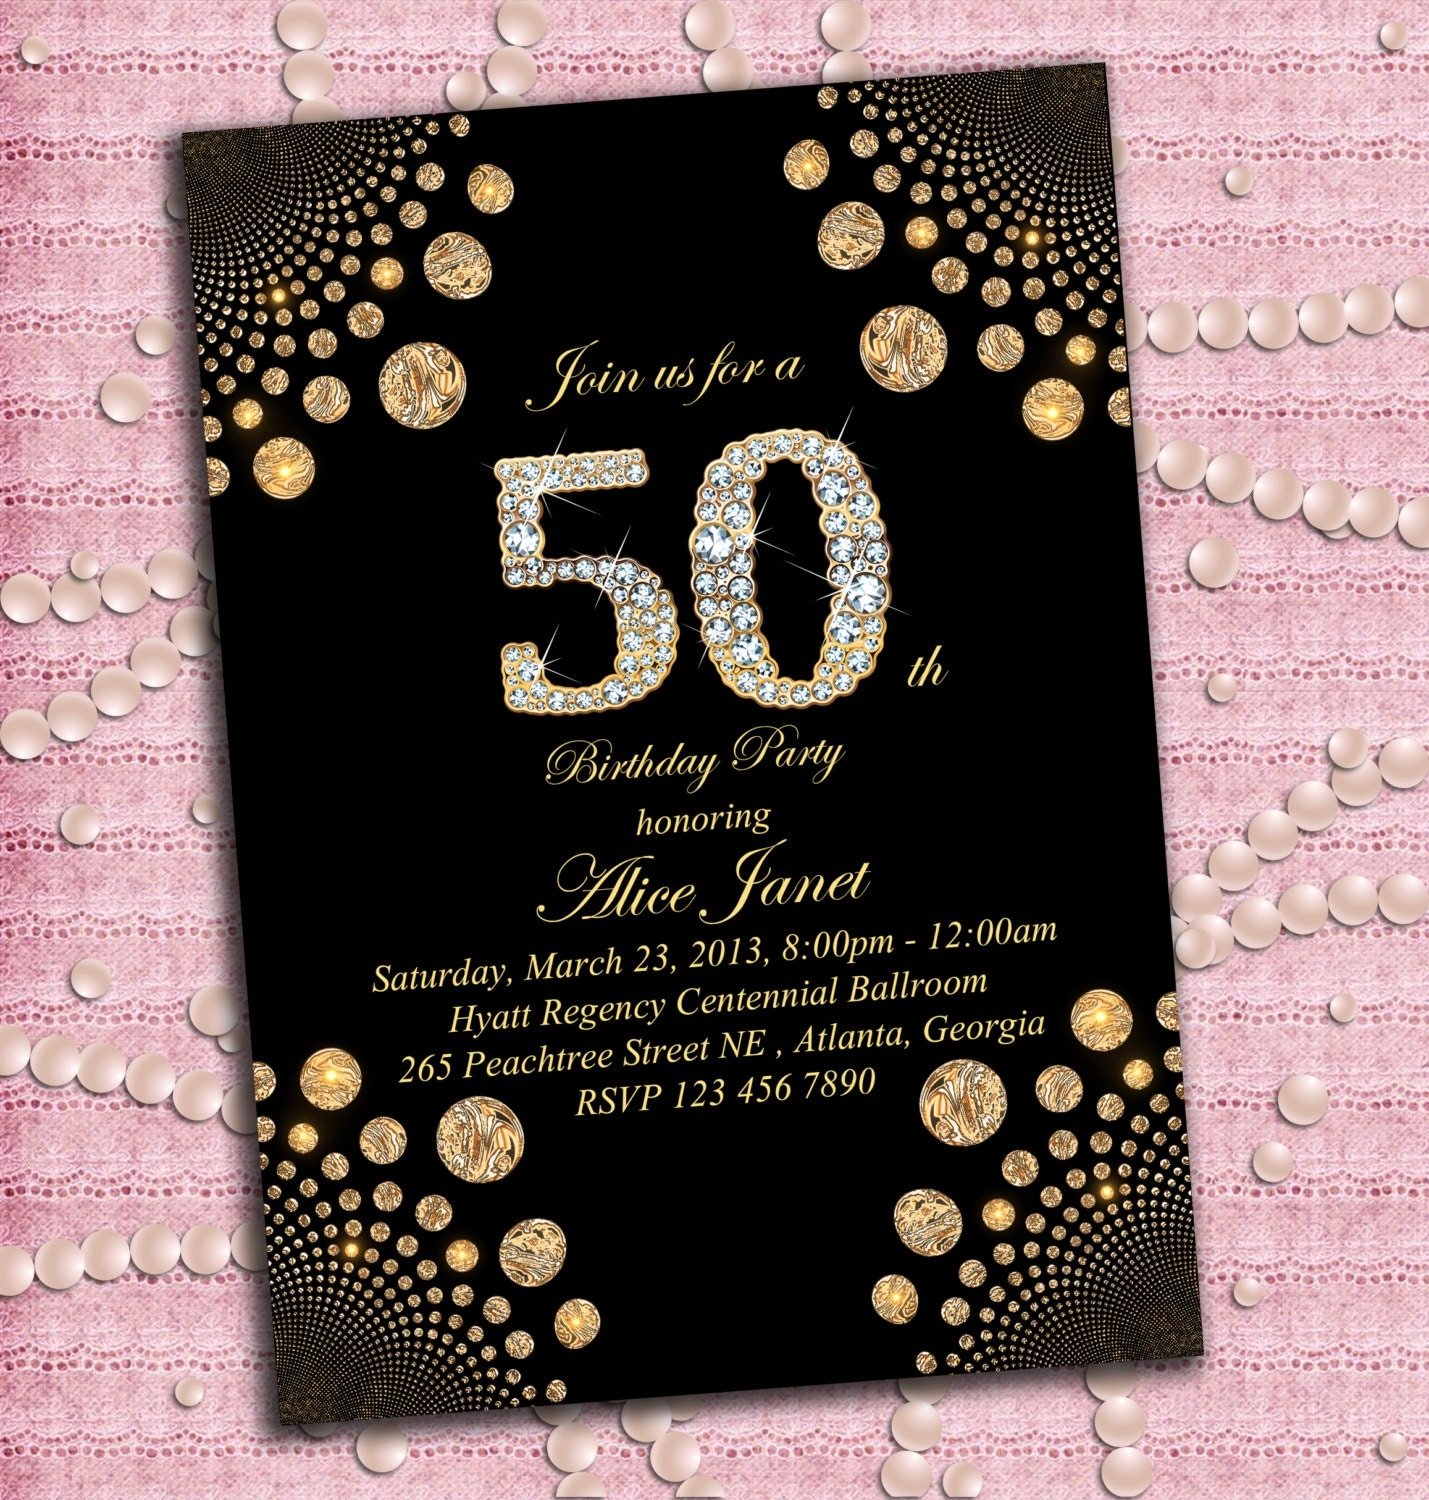 Приглашение на юбилей 30. Приглашение на день рождения 50 лет. Пригласительные на день рождения 30 лет. Приглашение на день рождения юбилей 50. Пригласительные на юбилей 50 лет женщине.